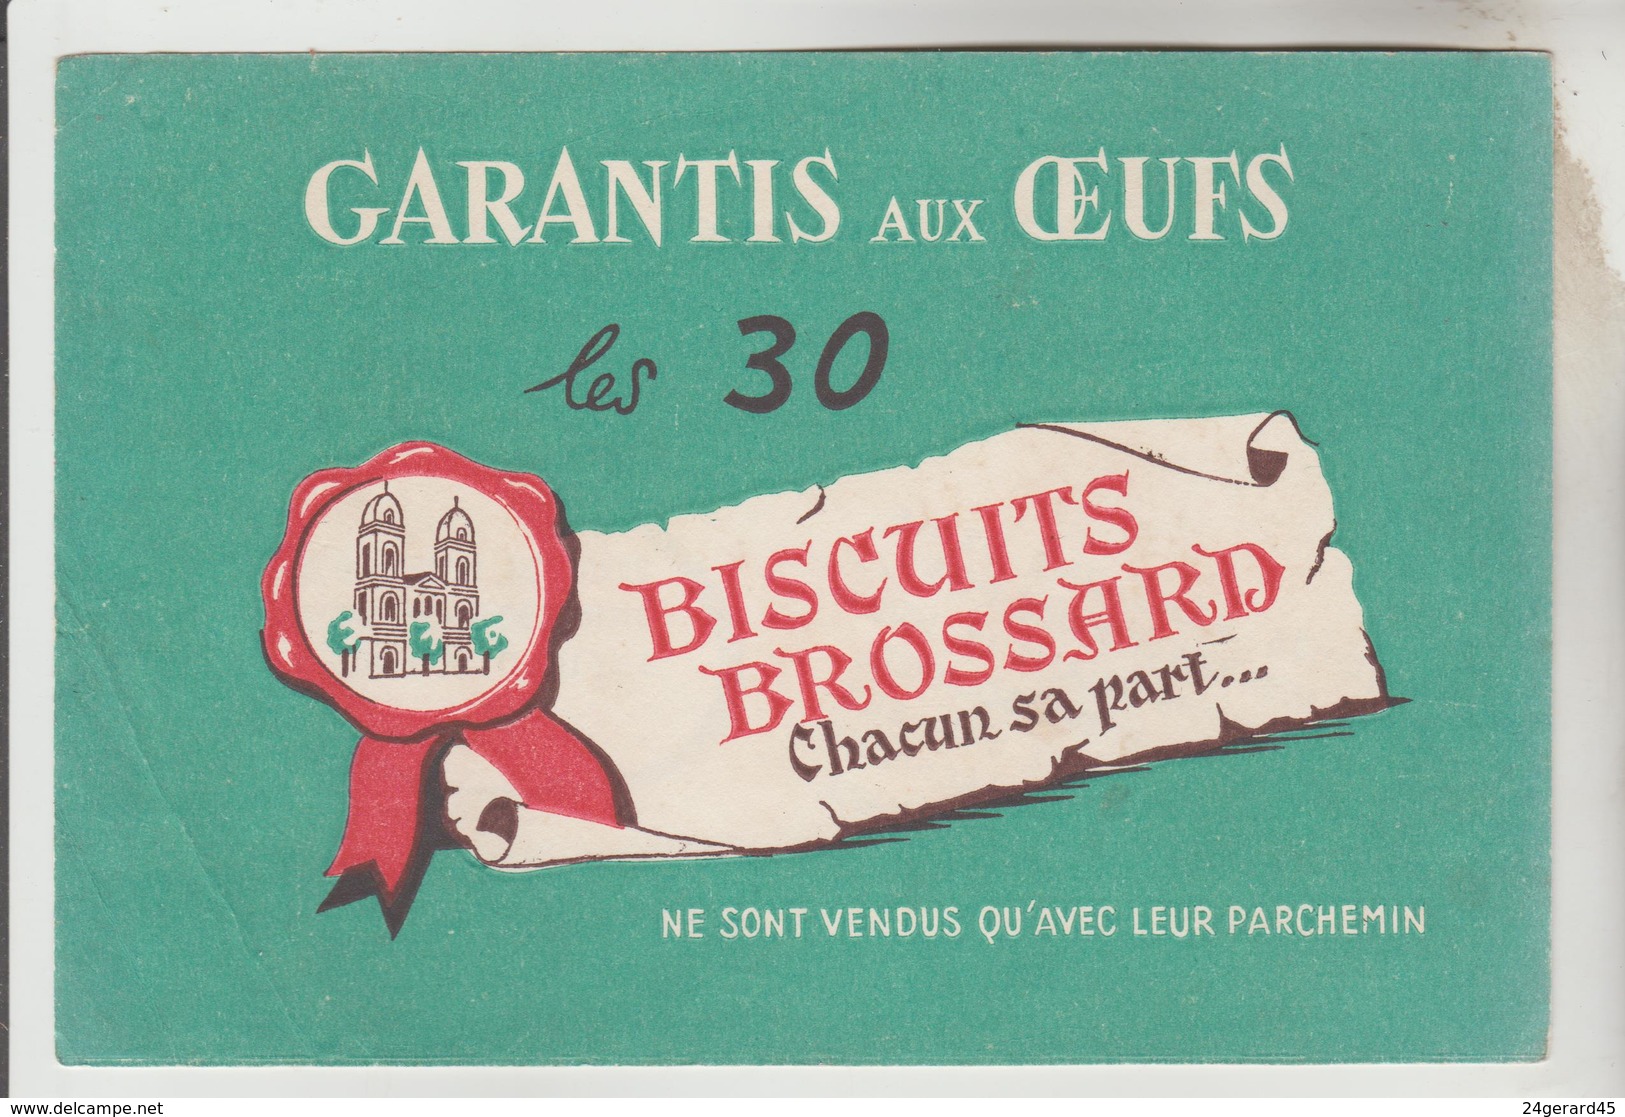 2 BUVARDS GATEAUX PAIN D'EPICES - Pain D'Epices BROCHET Frères, Biscuits BROSSARD St Jean D'Angély Charente Maritime - Mostard